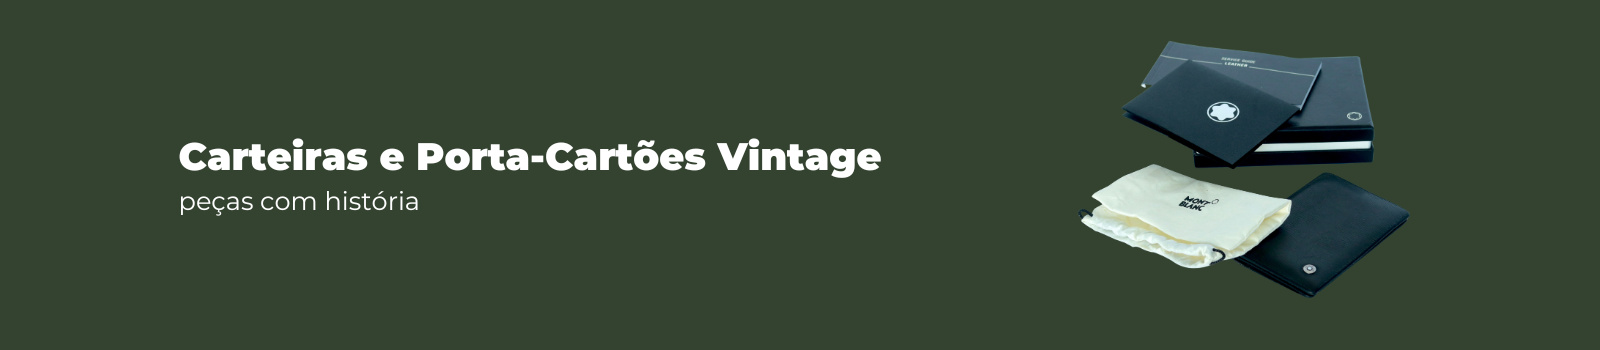 coleção de carteiras vintage com história montblanc veentx